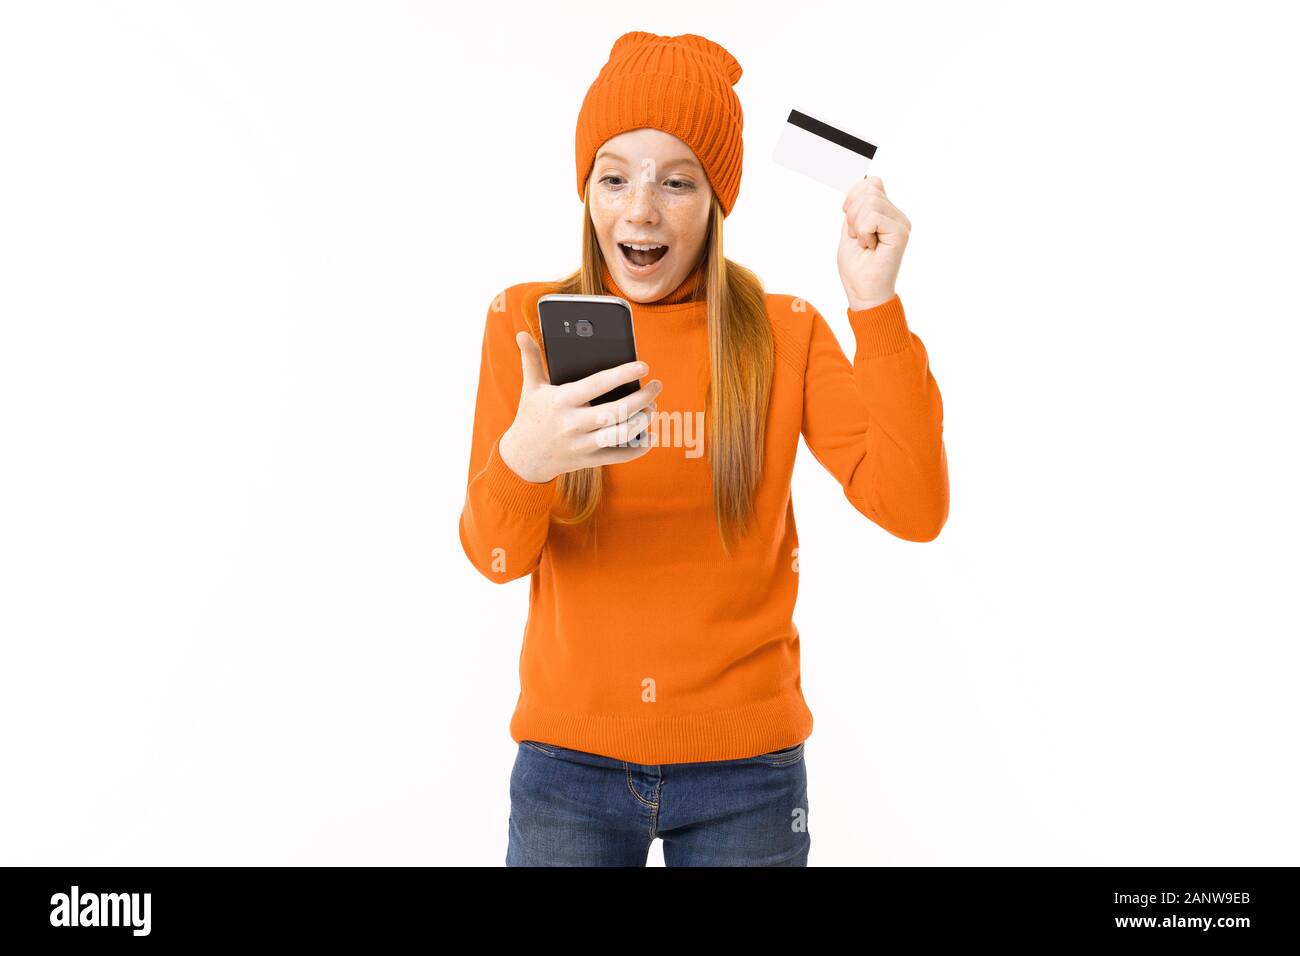 Fröhliches Mädchen mit roten Haaren, orangefarbenem Hoodie und Hut mit Kreditkarte und Telefon isoliert auf weißem Hintergrund Stockfoto